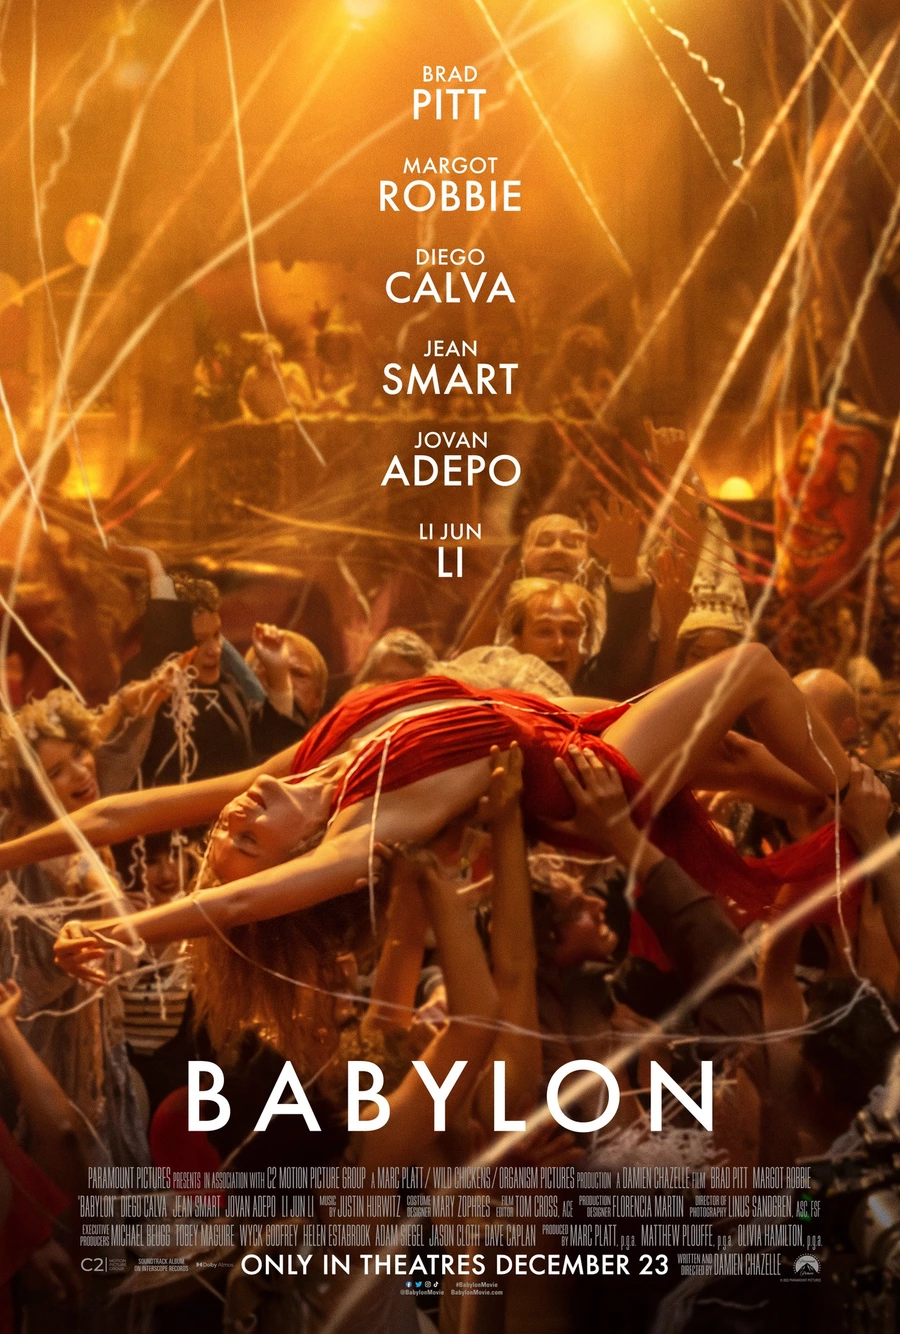 Nouvelle affiche pour le film Babylon de Damien Chazelle, avec Brad Pitt, Margot Robbie et Diego Calva.. C'est une histoire d'ambition débridée et d'excès choquants, dans laquelle divers personnages atteignent des sommets et subissent des chutes stupéfiantes au cours d'une période de décadence et de dépravation rampantes au début d'Hollywood.

Dans les cinémas à partir du 19 janvier.